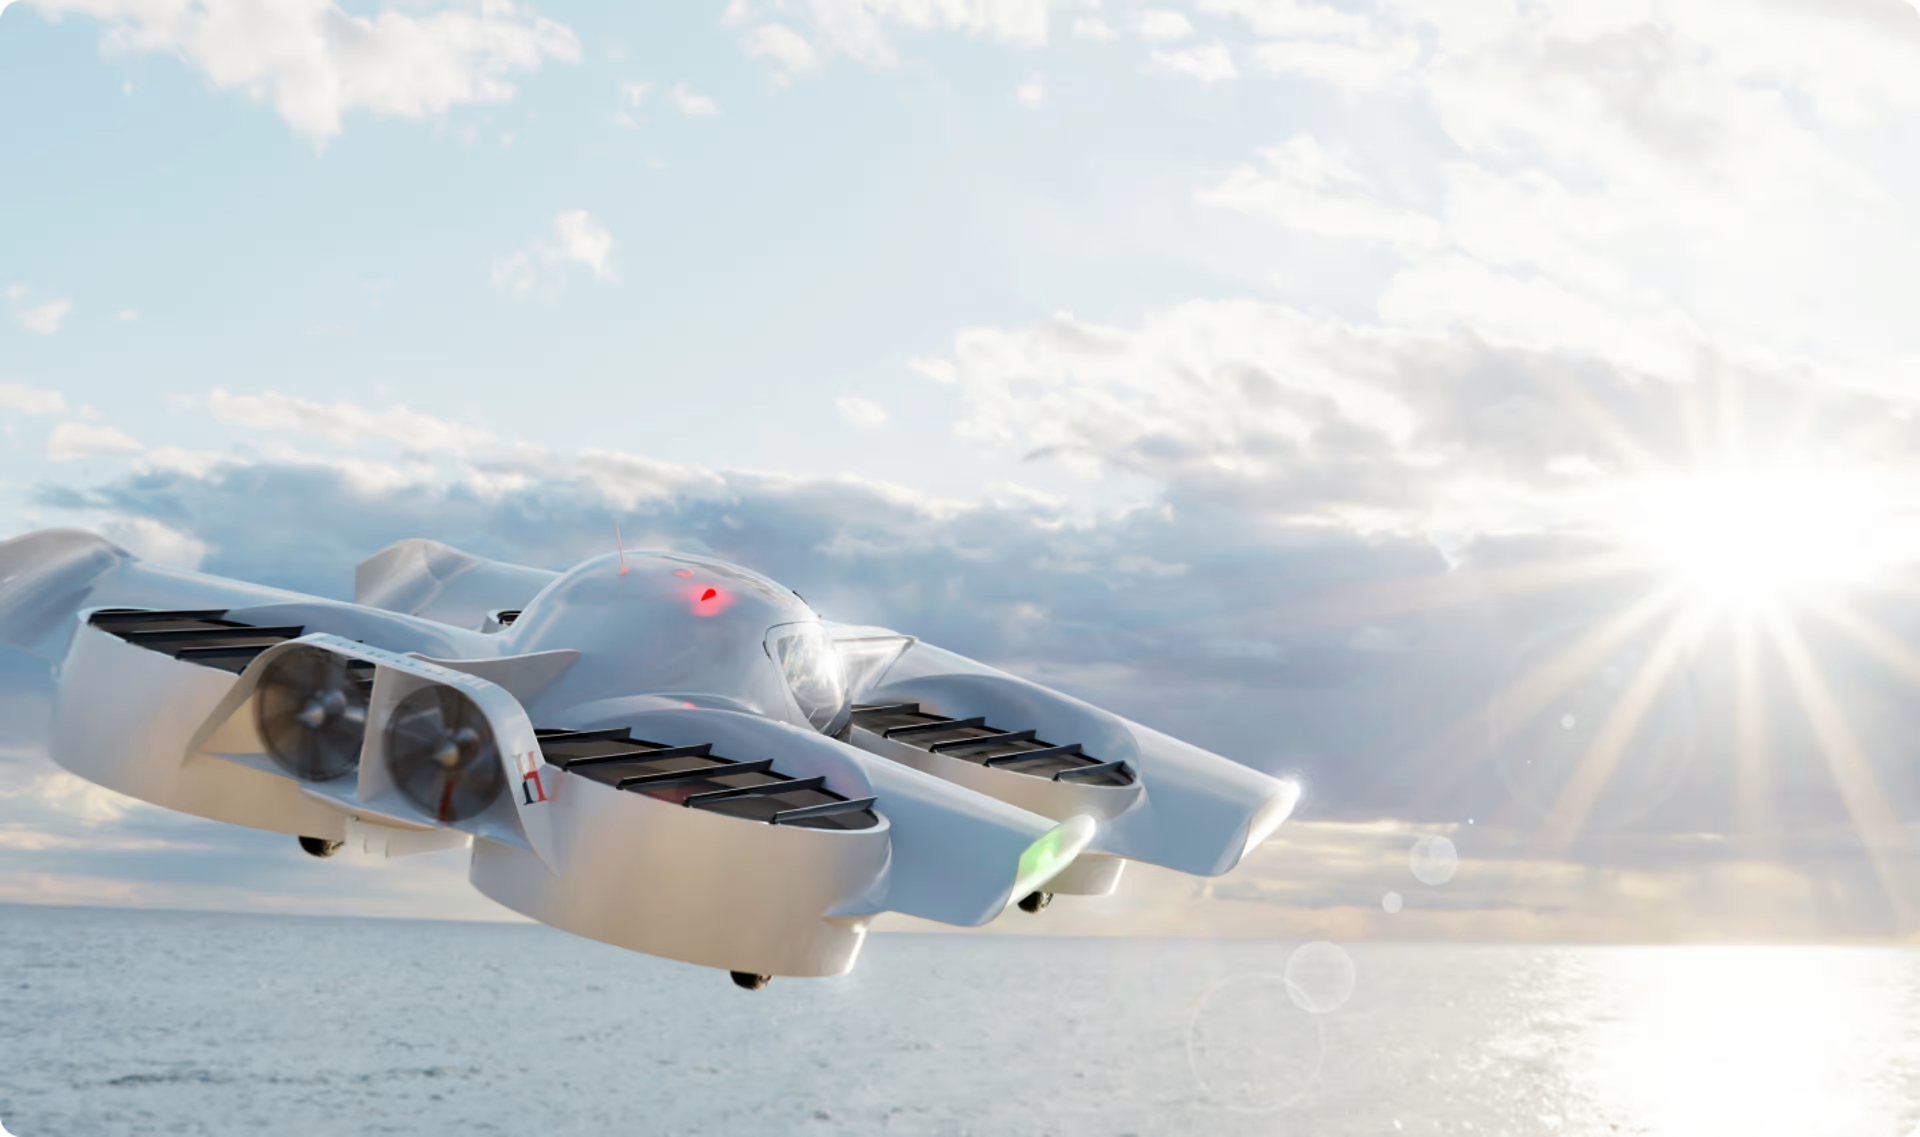 Doroni ha abierto la puerta a los pedidos anticipados de un avión eléctrico H1 que cuesta a partir de 150.000 dólares - un avión biplaza con una velocidad máxima de 225 km/h y una autonomía de 100 km